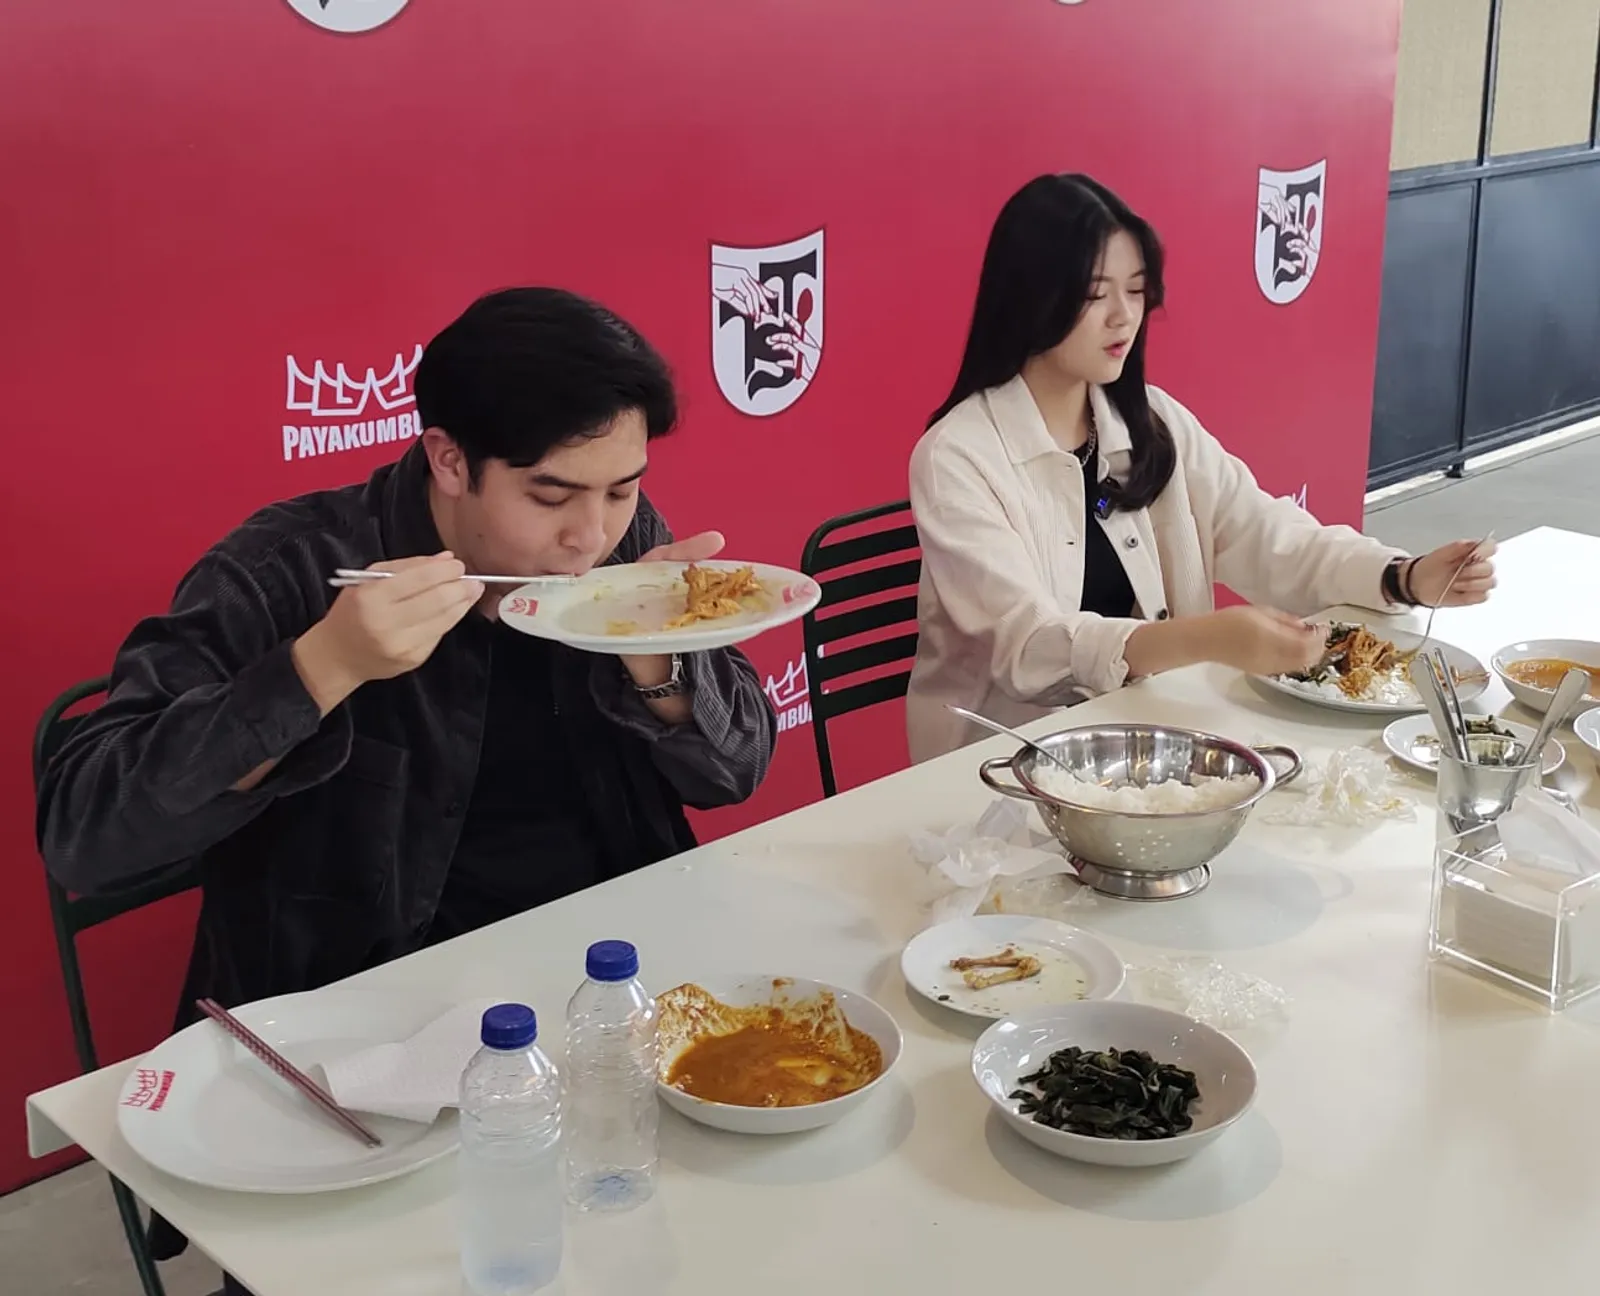 Potret Keseruan Challenge Makan
Nasi Padang Unik, Kamu Dukung Siapa?